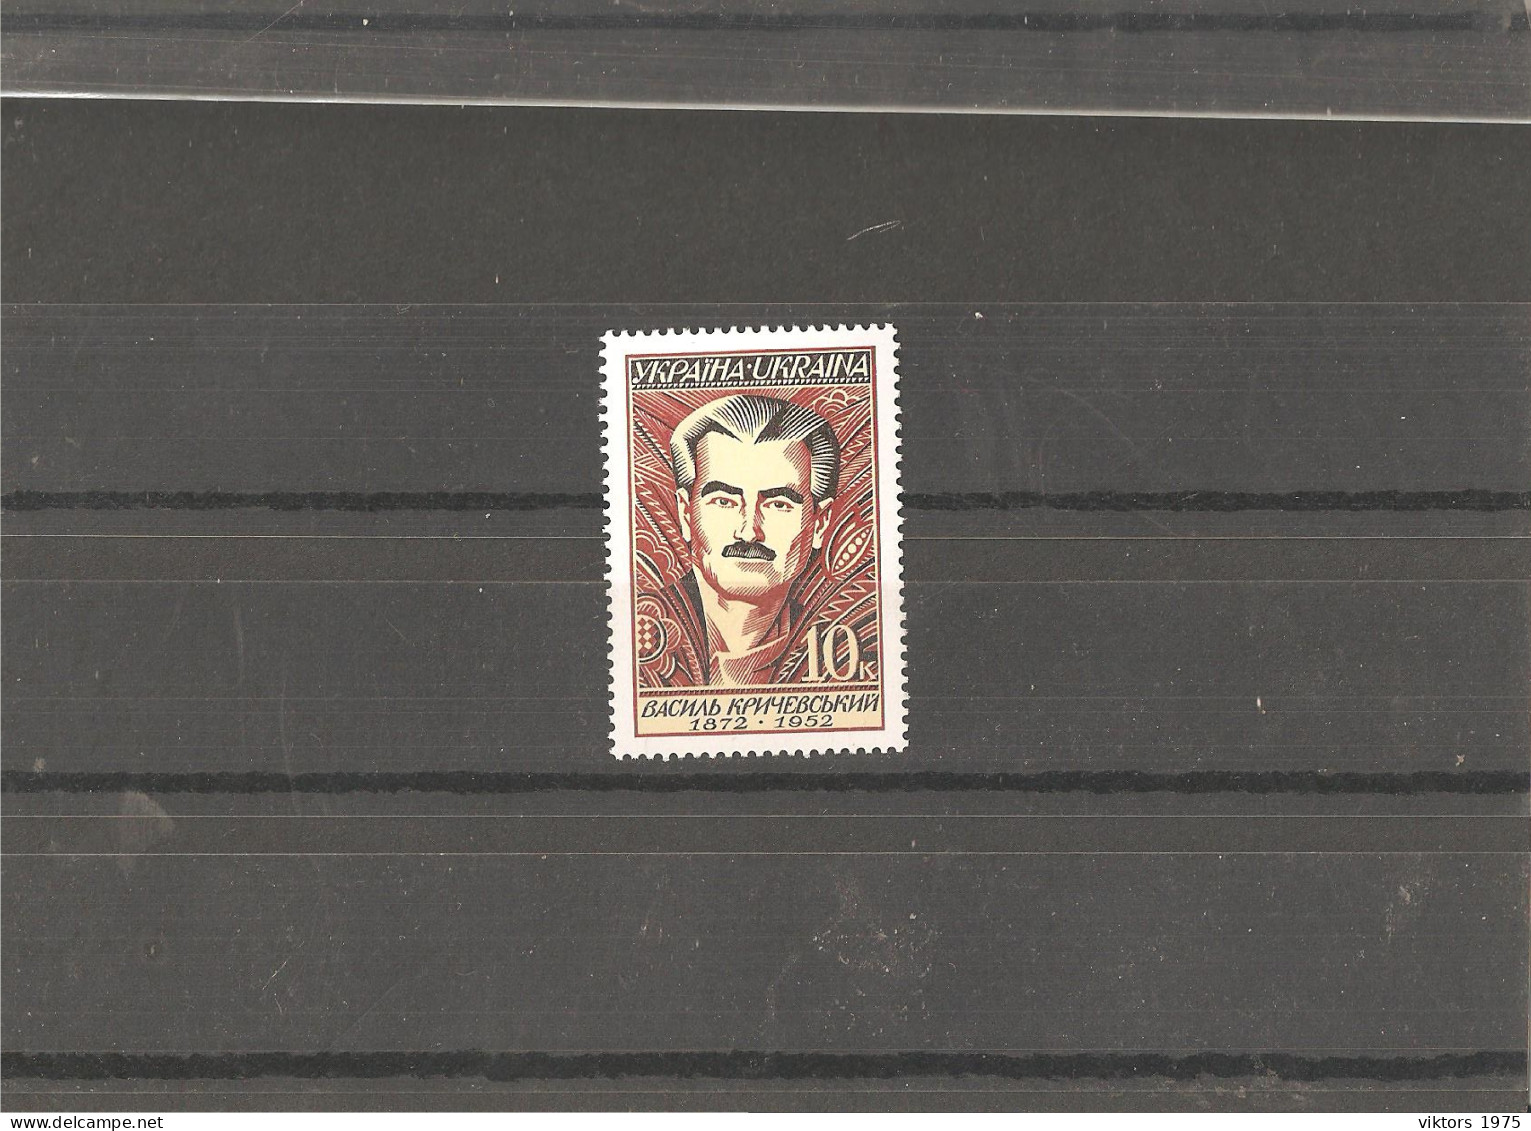 MNH Stamp Nr.234 In MICHEL Catalog - Ukraine